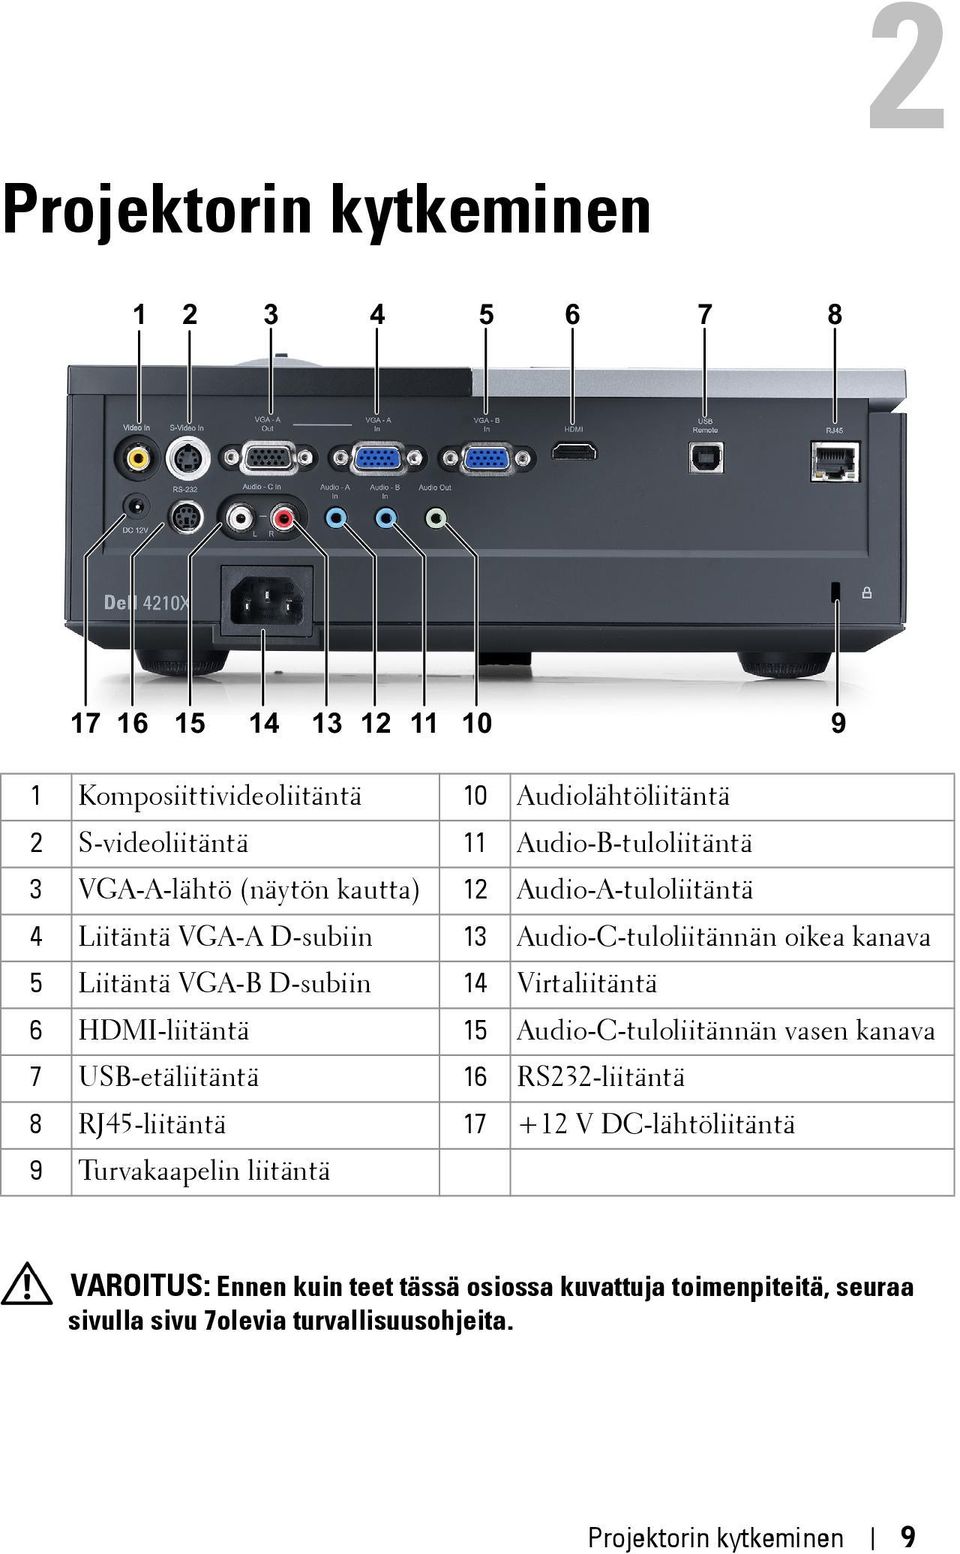 VGA-B D-subiin 14 Virtaliitäntä 6 HDMI-liitäntä 15 Audio-C-tuloliitännän vasen kanava 7 USB-etäliitäntä 16 RS232-liitäntä 8 RJ45-liitäntä 17 +12 V